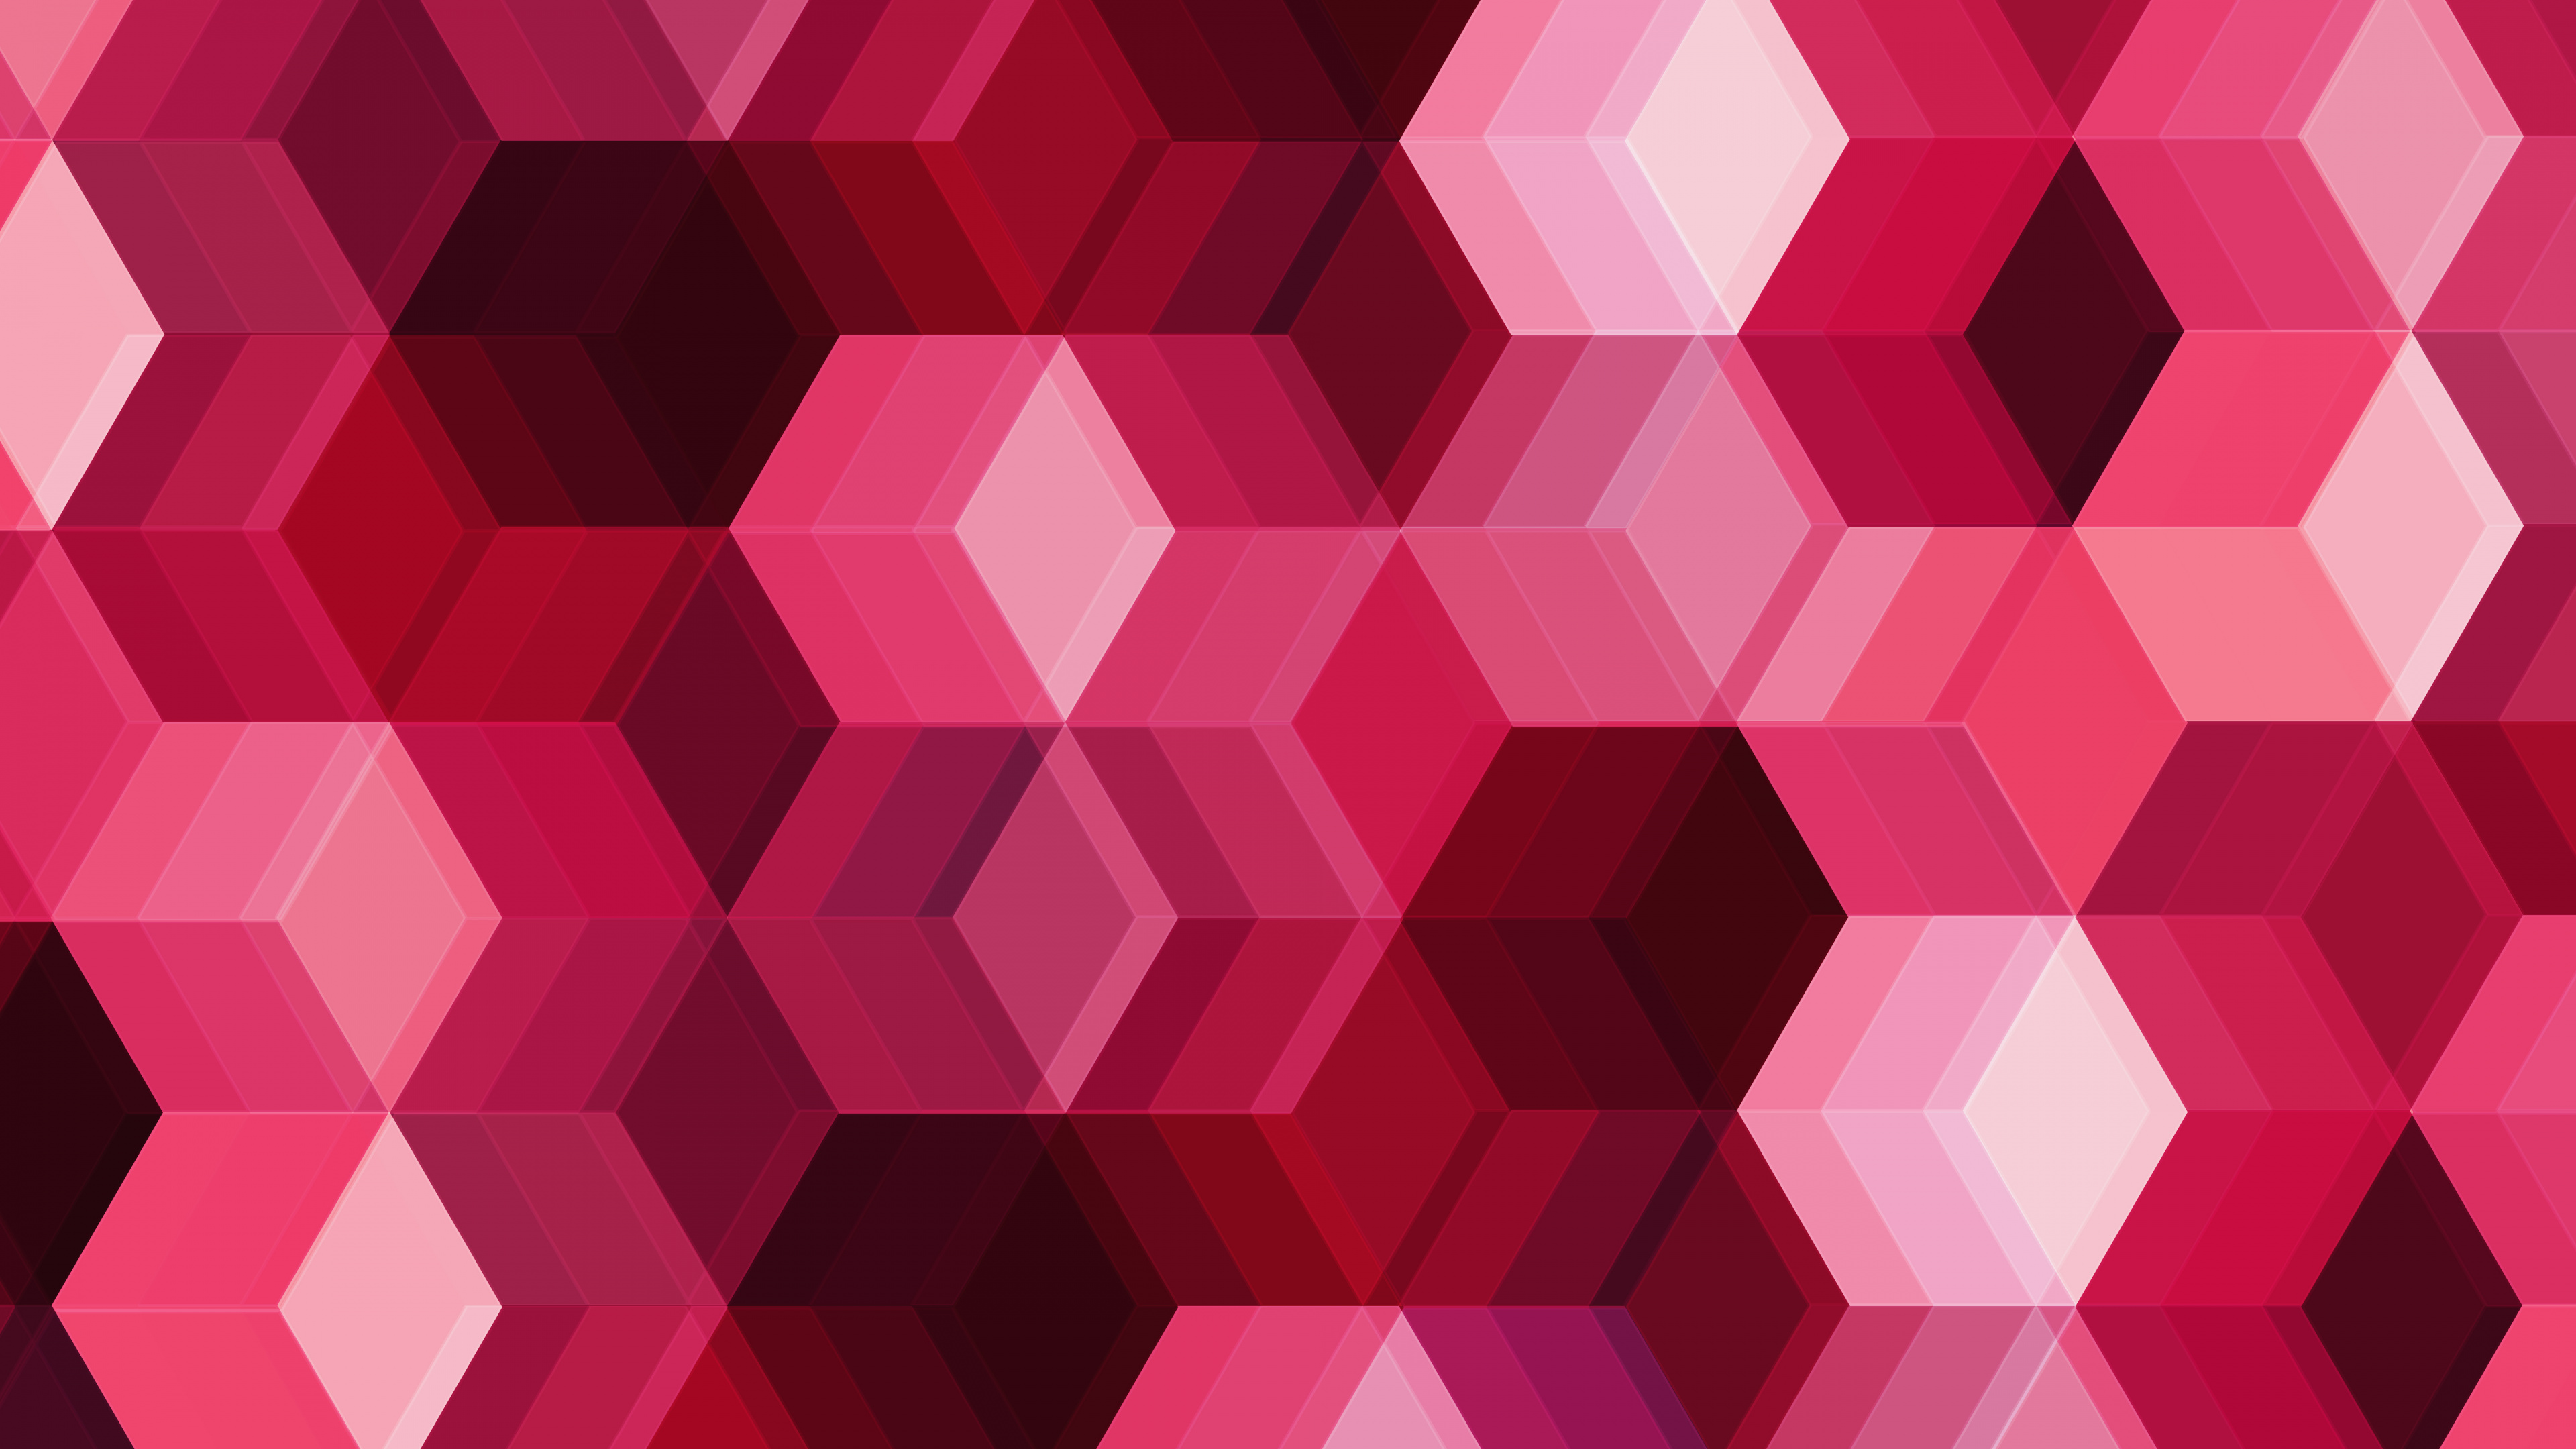 粉红色, 品红色, 对称, 立方体, 形状 壁纸 3840x2160 允许